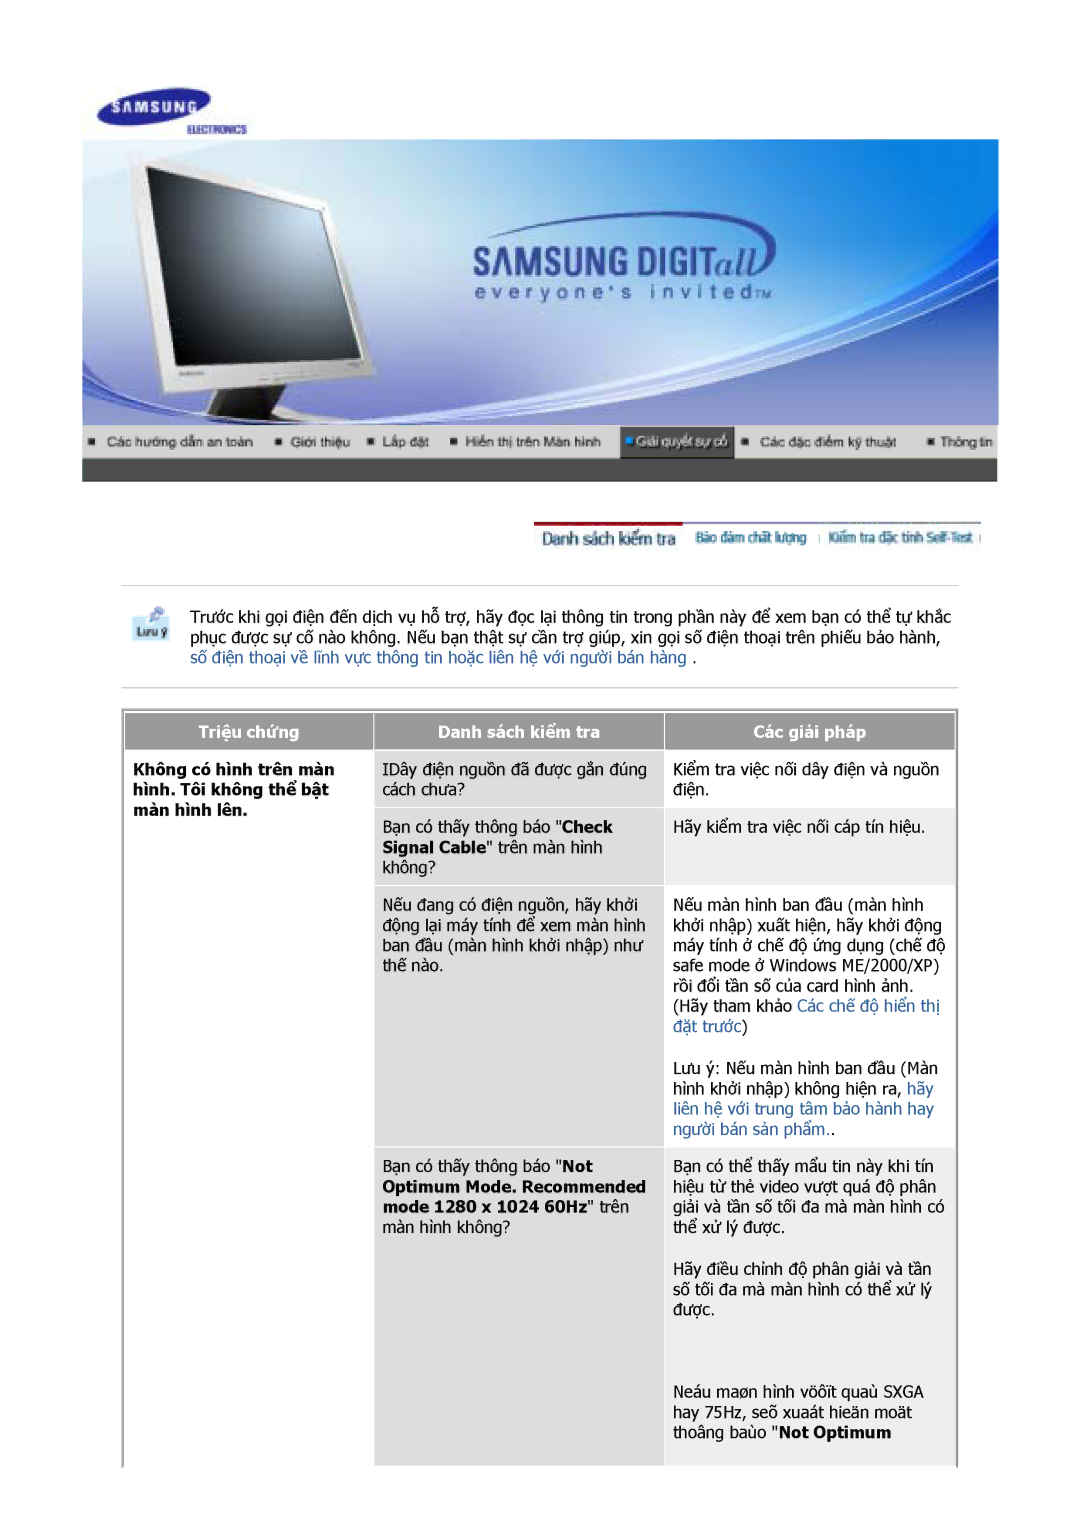 Samsung GY15VSSS/VNT manual Triệu chứng, Không có hình trên màn hình. Tôi không thể bật màn hình lên, Danh sách kiểm tra 